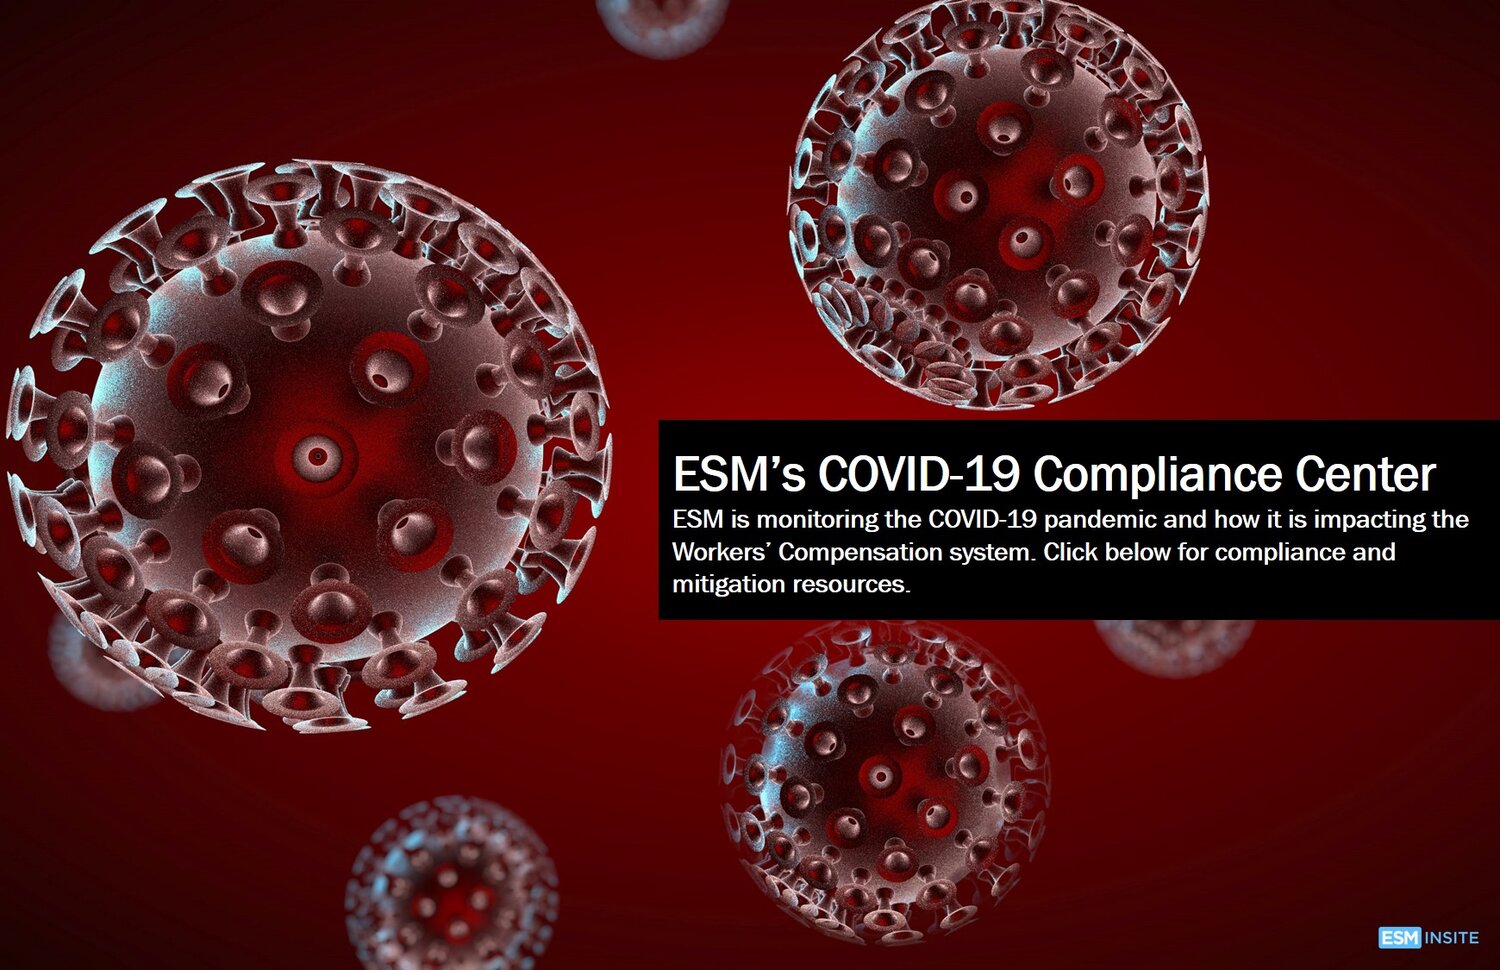 COVID-19 Compliance Center — ESM INSITE